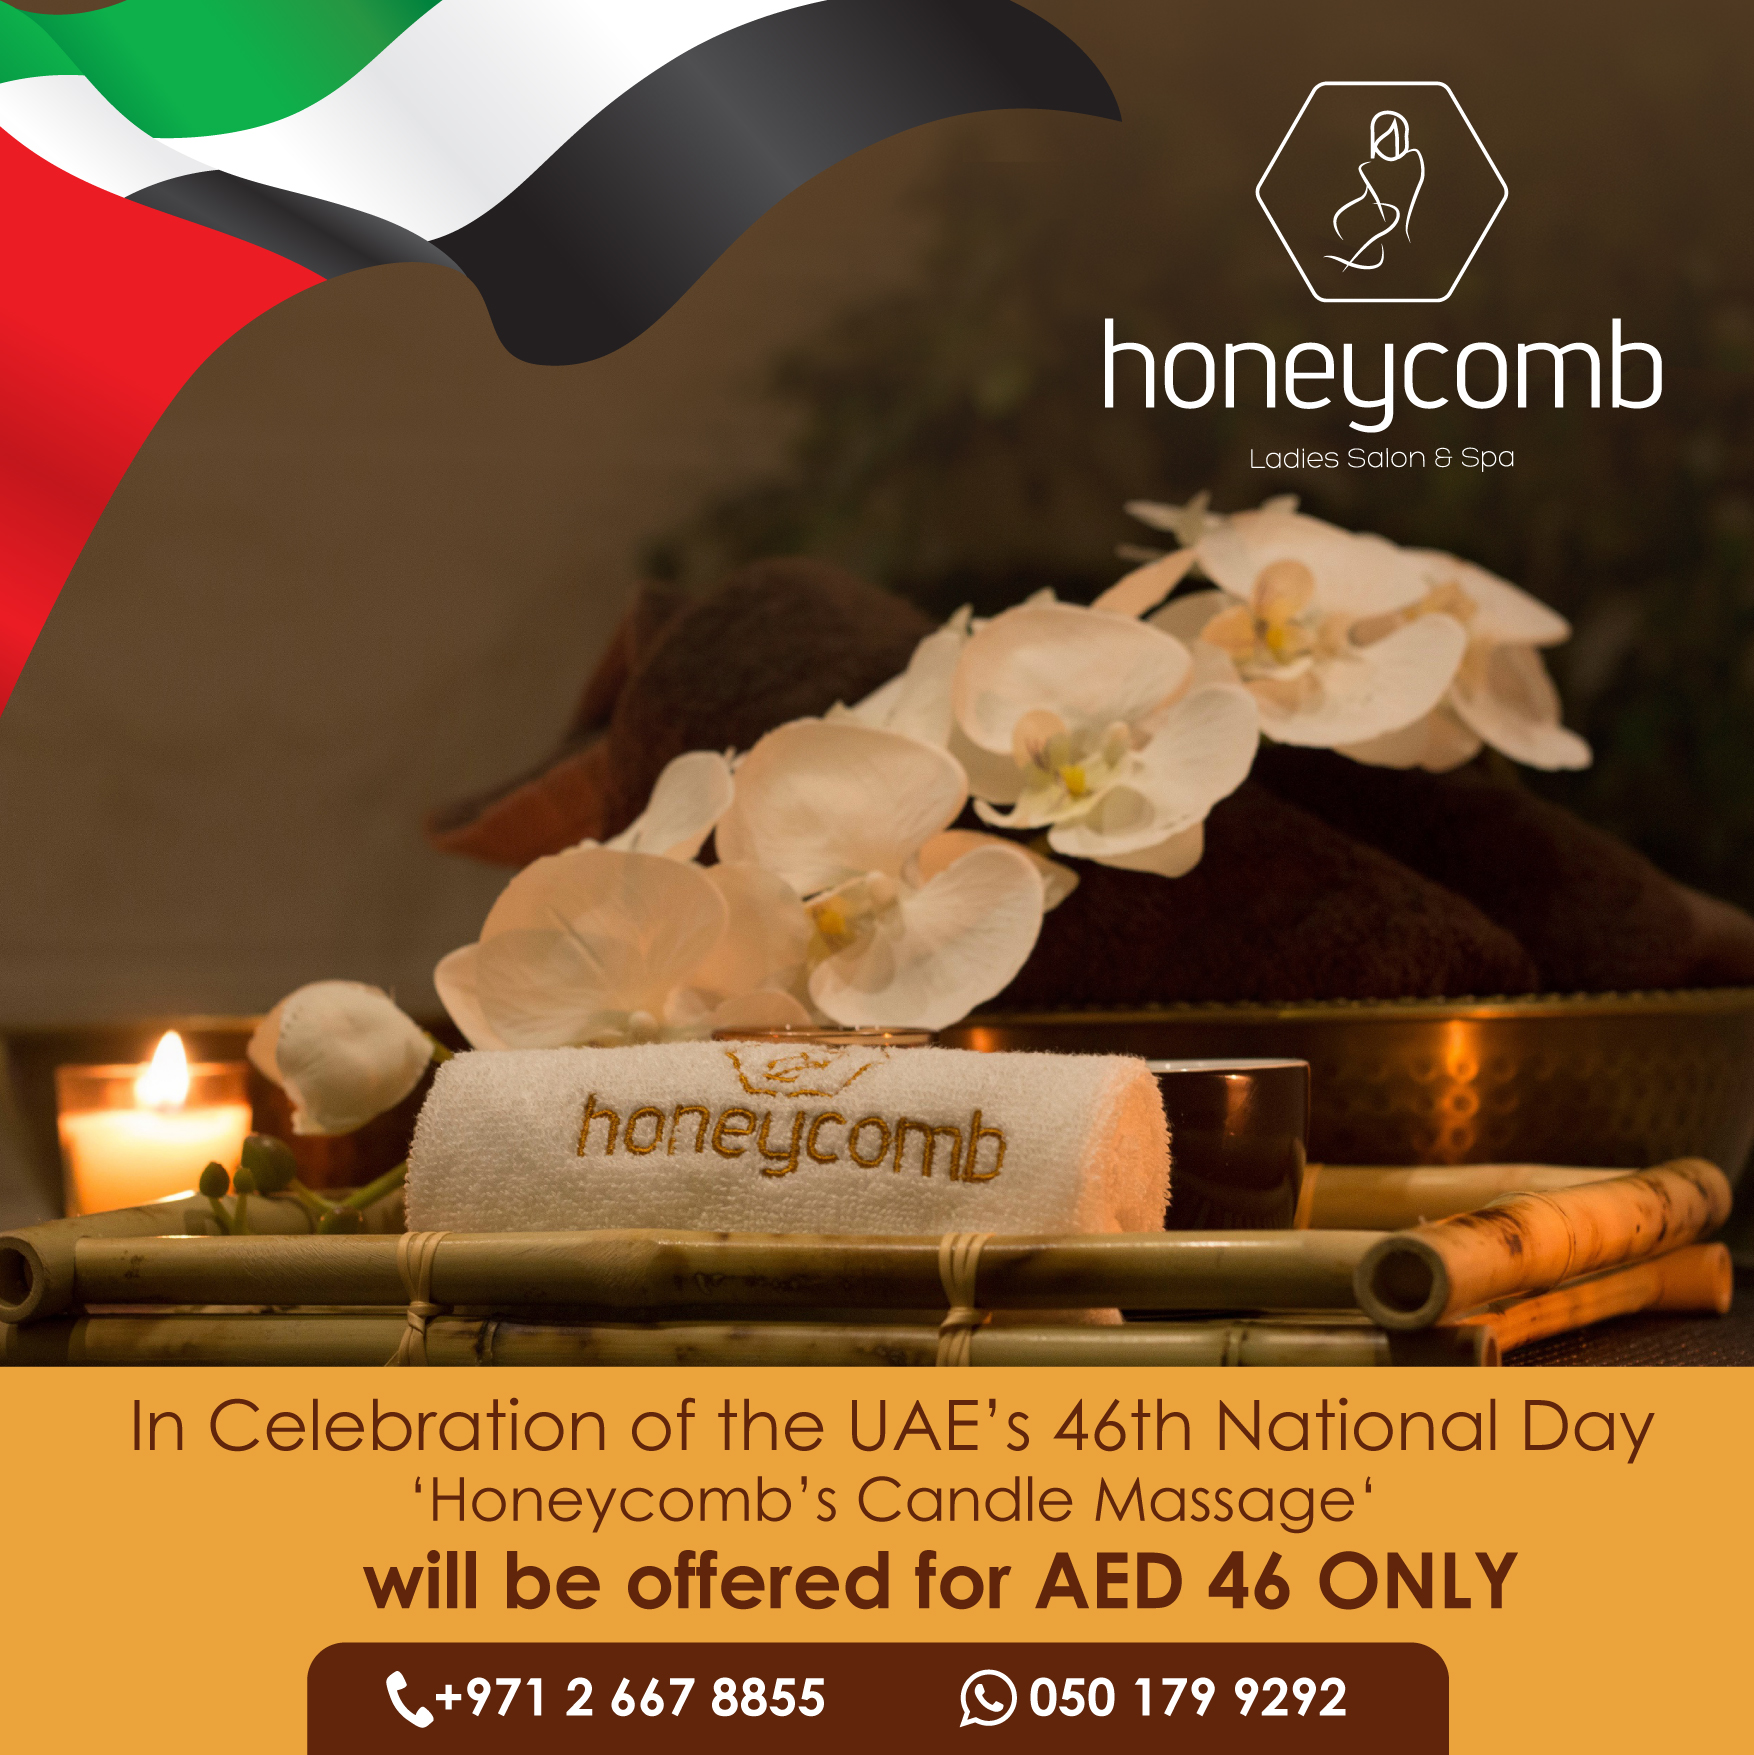 صالون وسبا هوني كومب يحتفل باليوم الوطني لدولة الإمارات